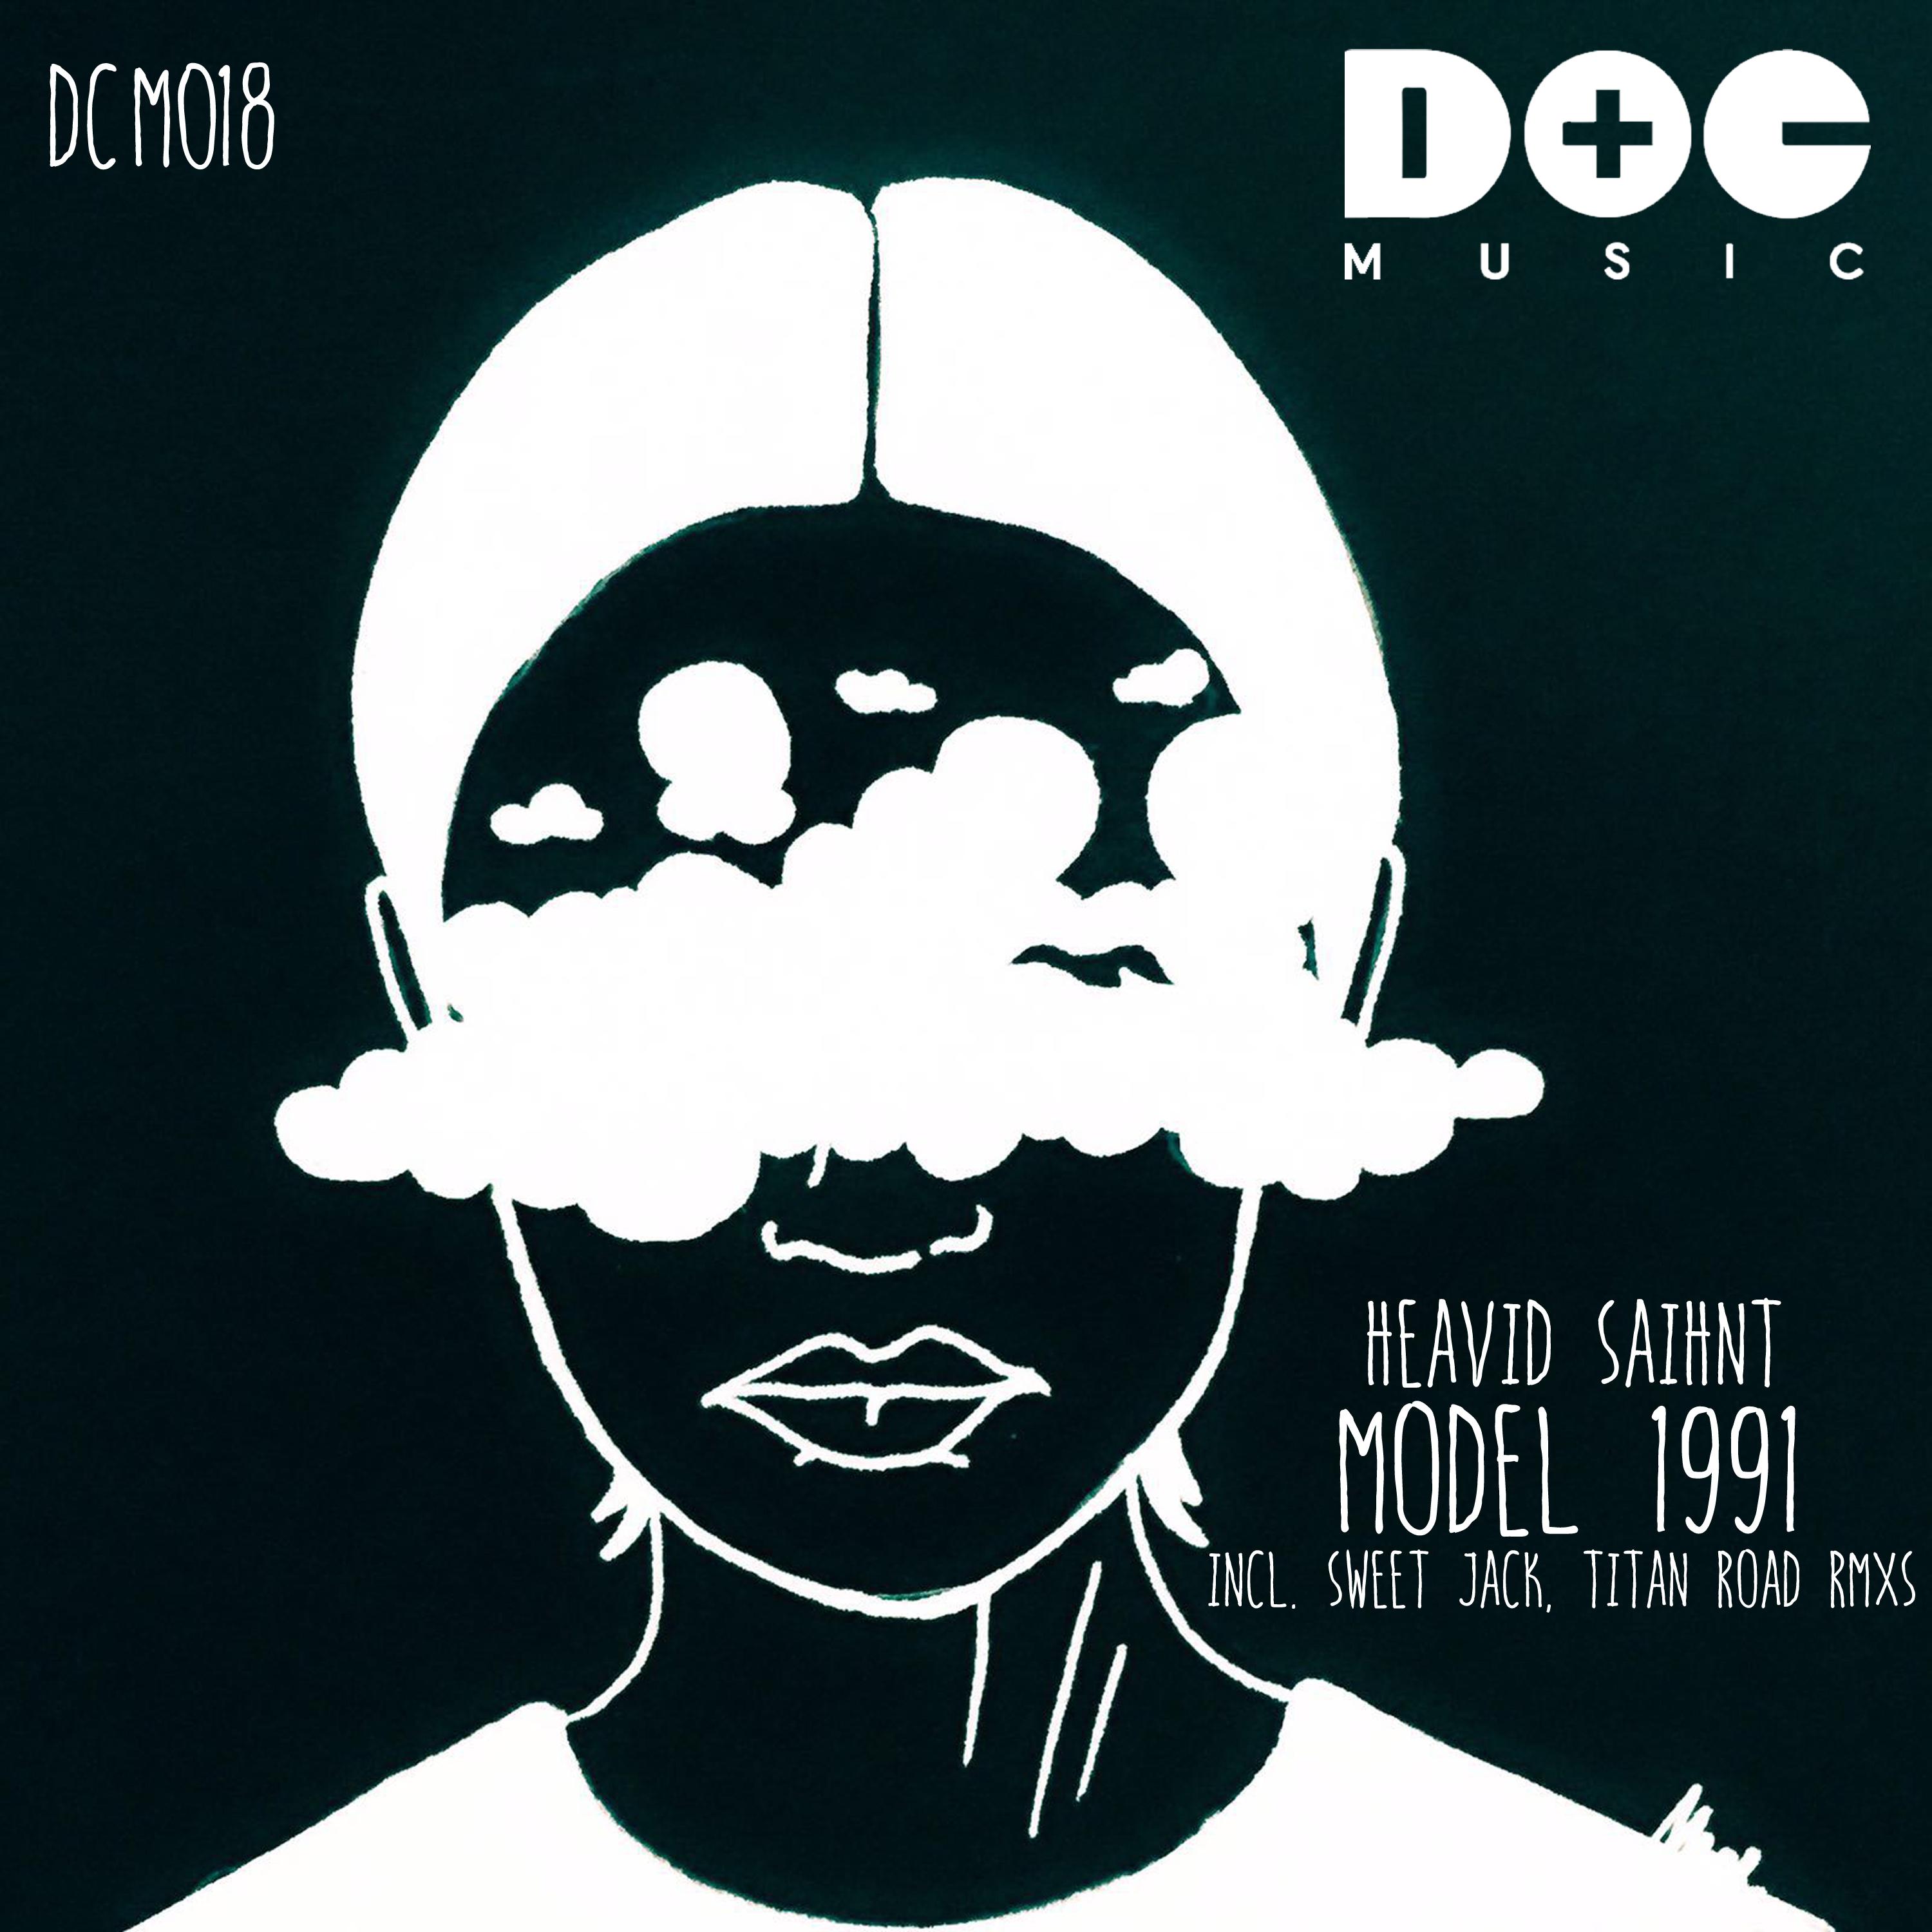 Model 1991 (Titan Road Remix)